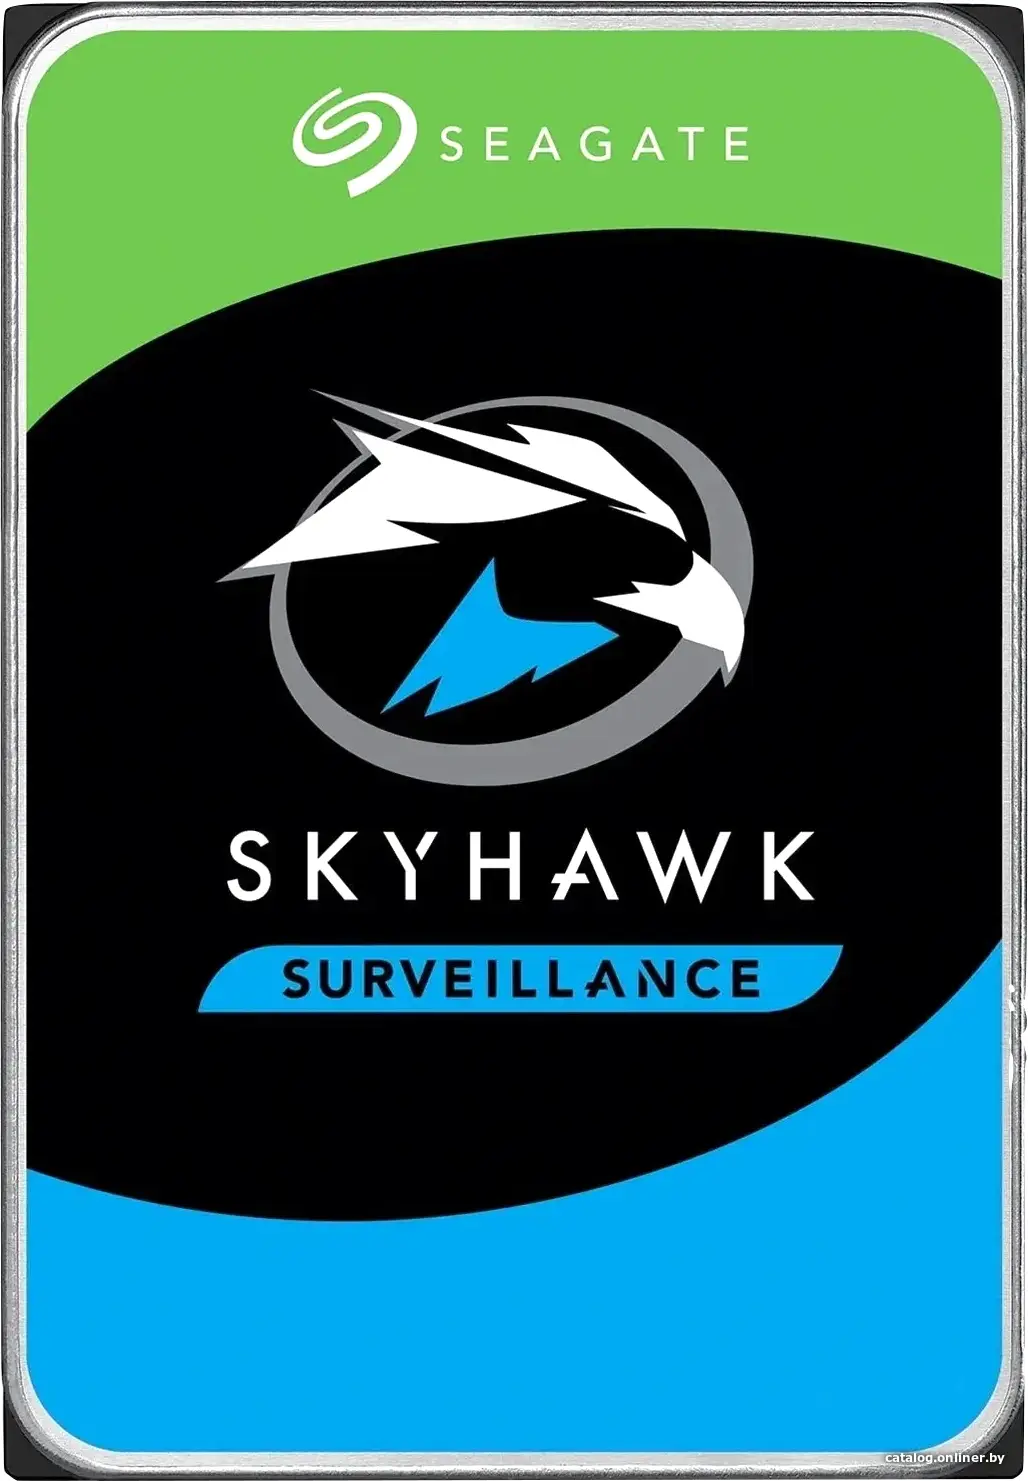 Купить Жесткий диск Seagate Skyhawk 6TB (ST6000VX001), цена, опт и розница